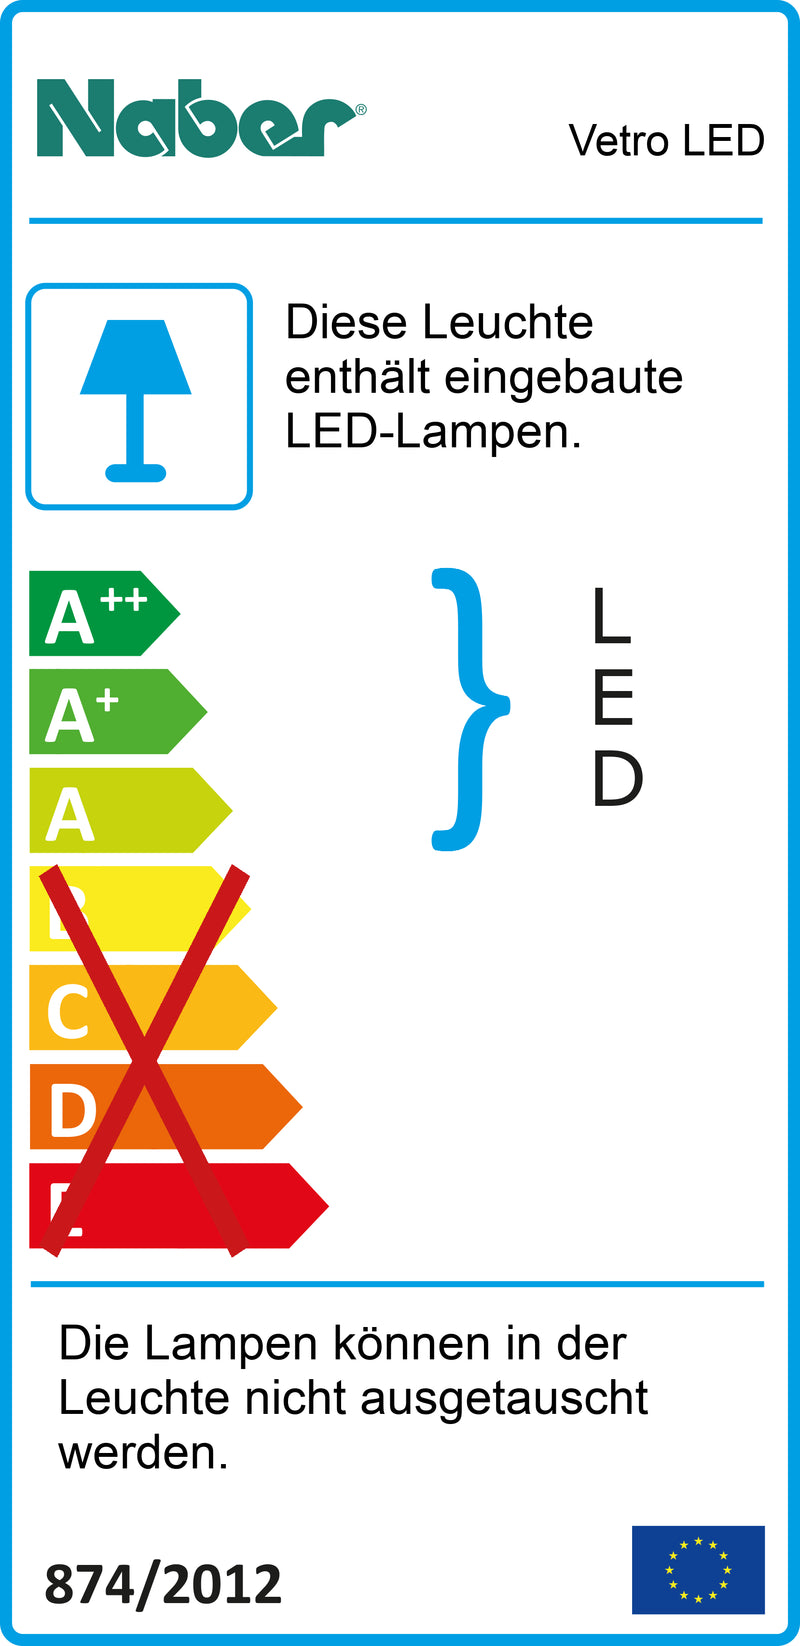 E-Label zu Zeichnung zu Vetro LED als Variante Einzelleuchte m. LED Touch S. D., schwarz von Naber GmbH in der Kategorie Lichttechnik in Österreich auf conceptshop.at